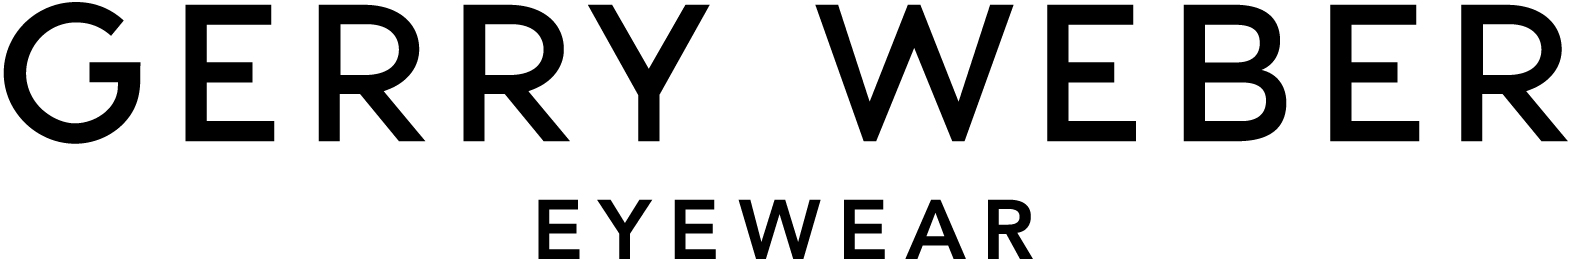 Gerry Weber Eyewear